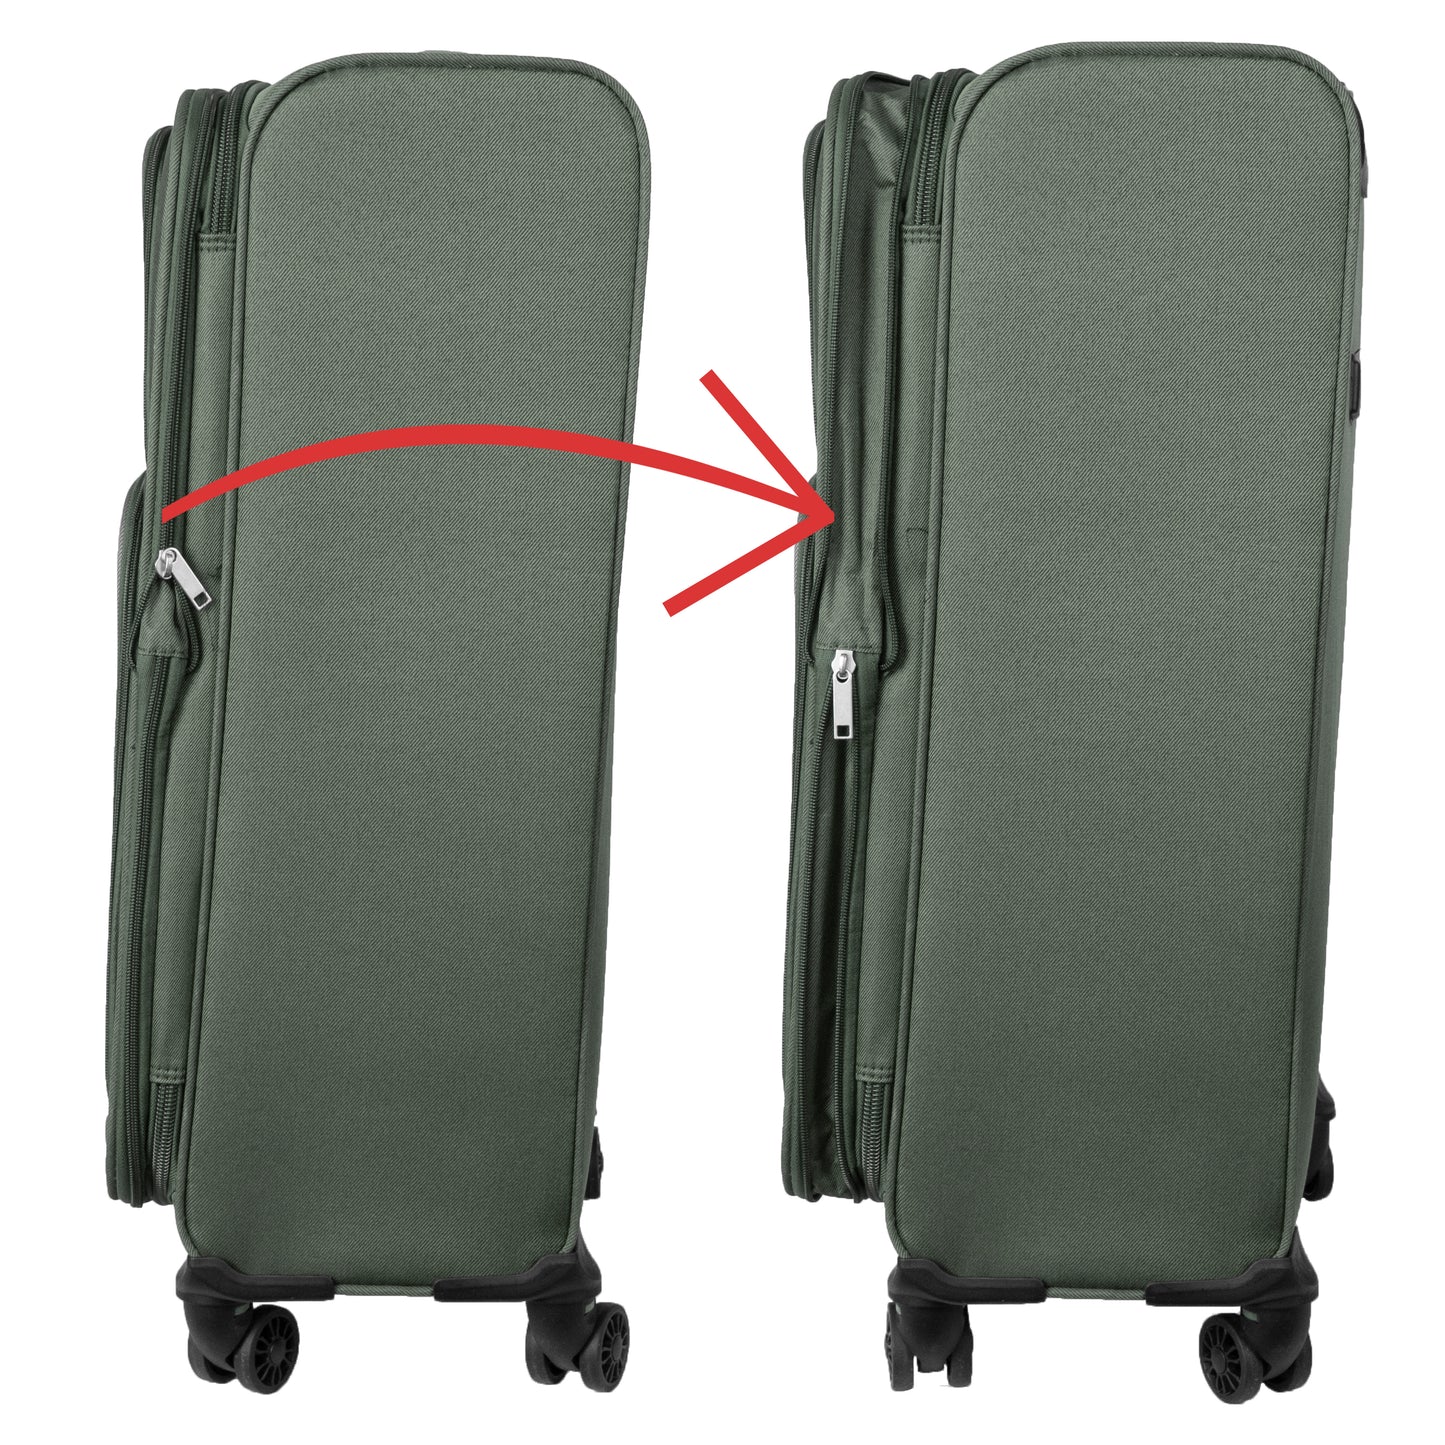 4 Wheels Soft Case Luggage Green